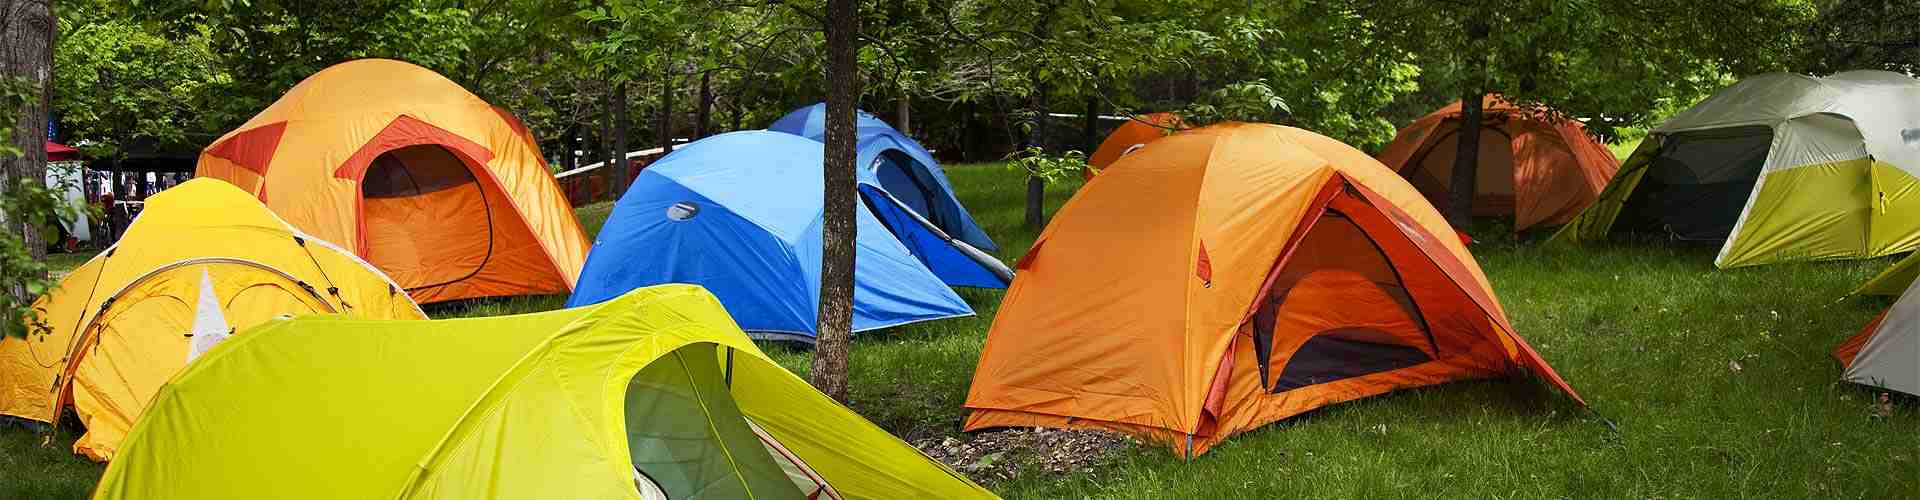 Campings y bungalows en Navaleno
           
           


          
          
          


